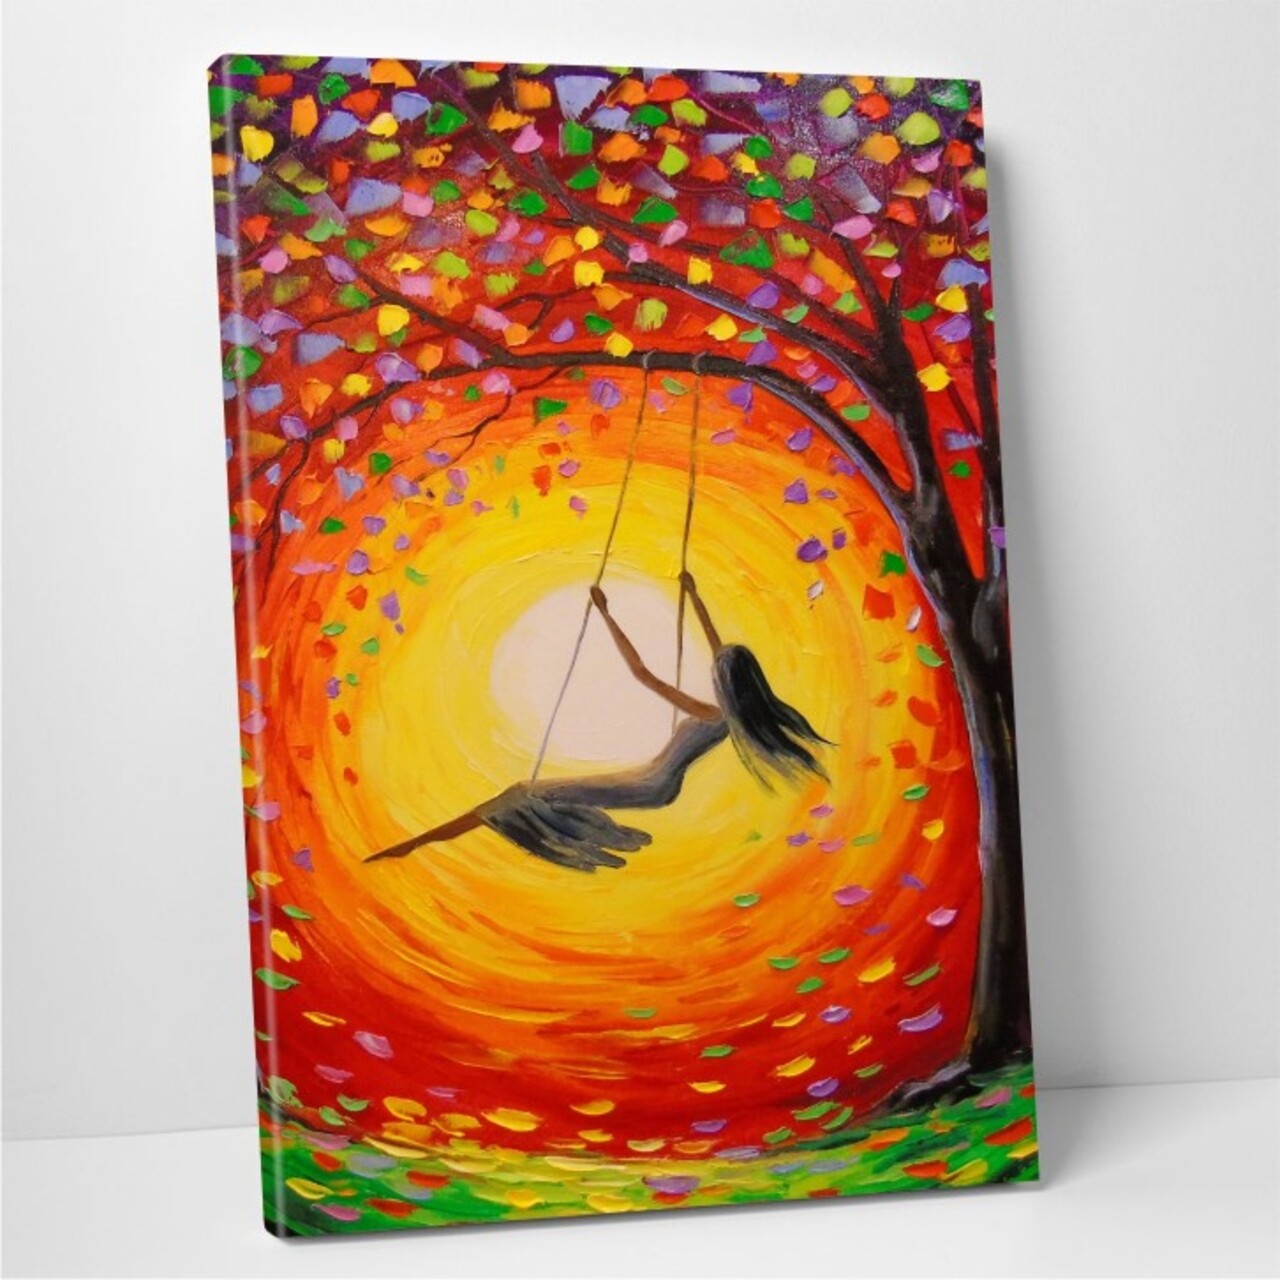 Tablou decorativ Dirck, Modacanvas, 50x70 cm, canvas, multicolor